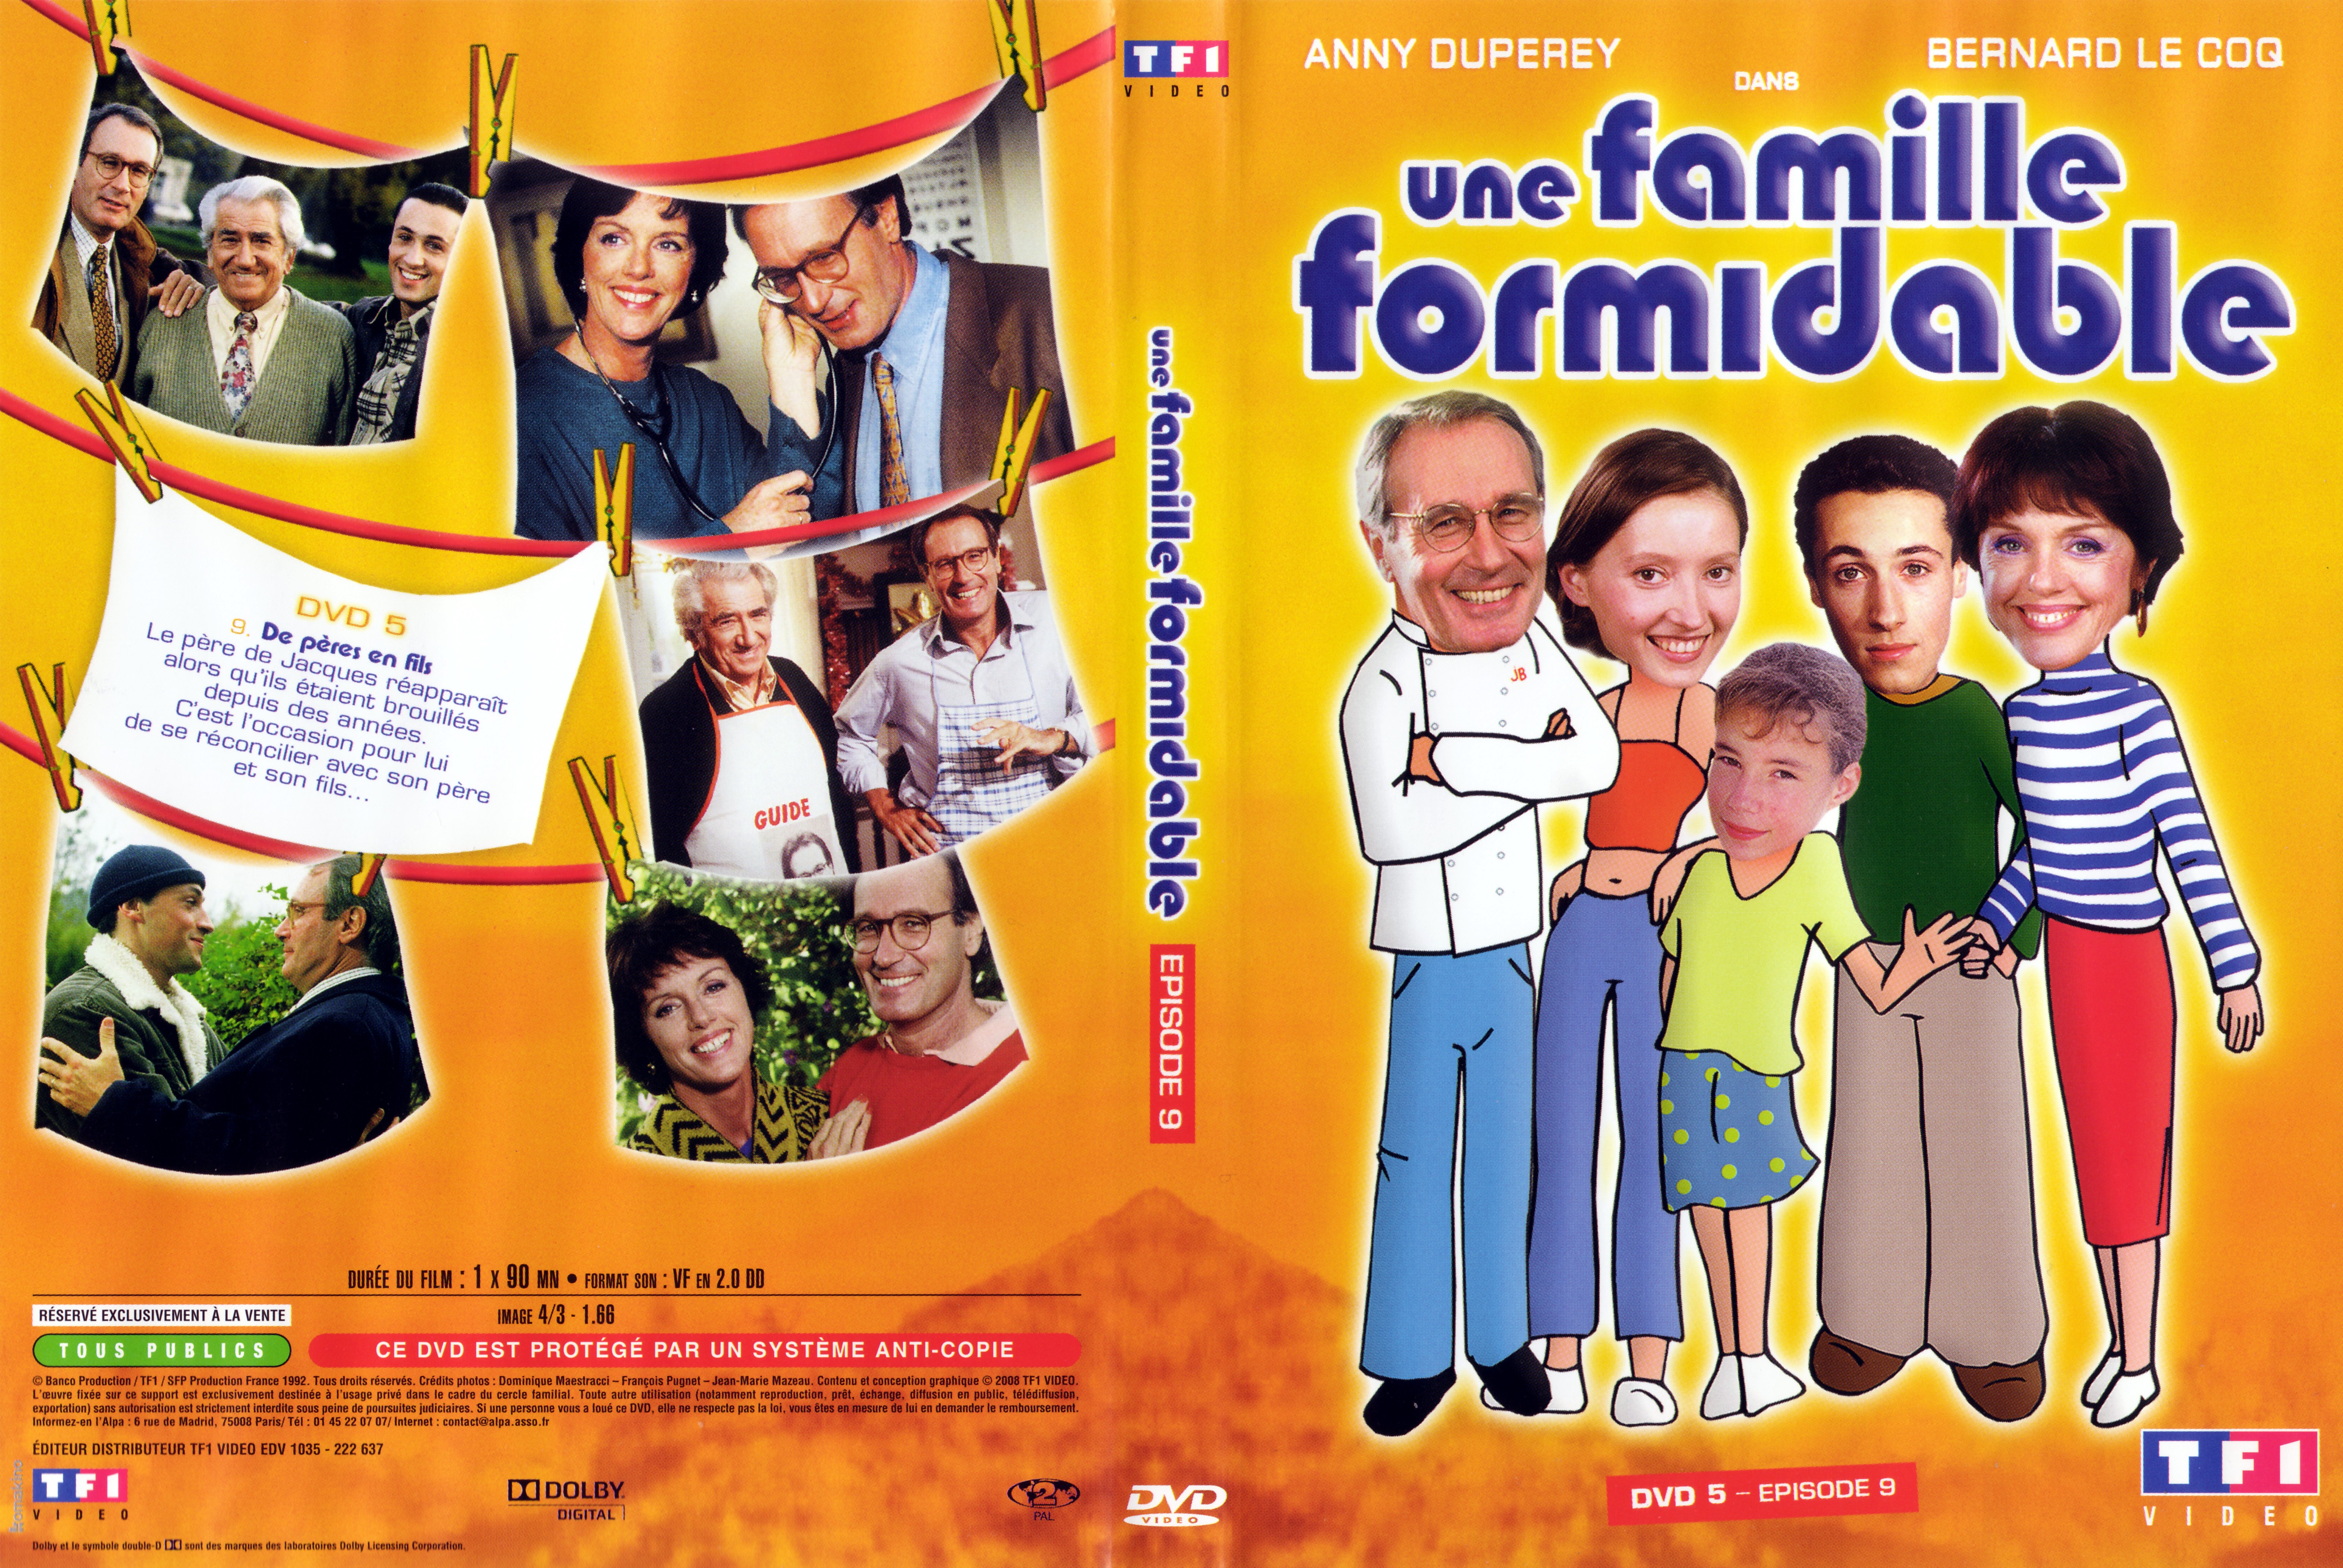 Jaquette DVD Une famille formidable pisode 9 Saison 3